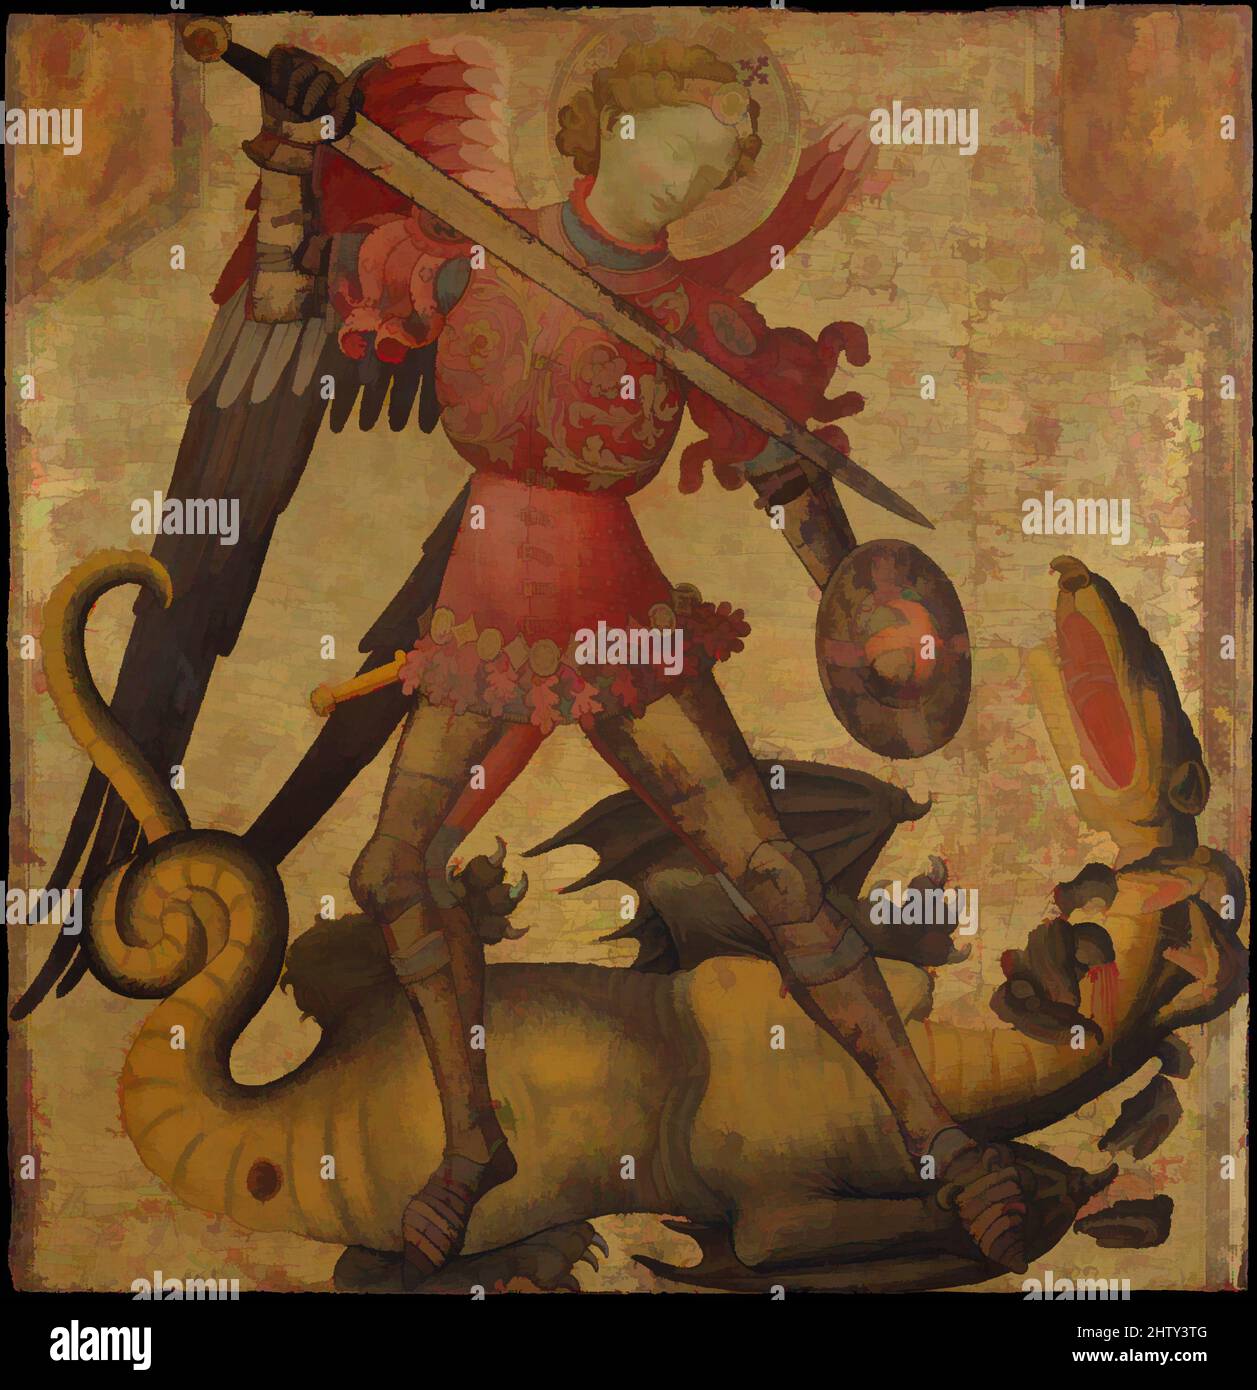 Art inspiré par Saint Michael et le Dragon, ca. 1405, Tempéa sur bois, doré, 41 3/8 x 40 3/4 po. (105,1 x 103,5 cm), peintures, Espagnol (Valencien) Peintre (actif en Italie, début du 15th siècle), cette œuvre a été peinte en Italie par un artiste inconnu dont le style est redevable à la, oeuvres classiques modernisées par Artotop avec un peu de modernité. Formes, couleur et valeur, impact visuel accrocheur sur l'art émotions par la liberté d'œuvres d'art d'une manière contemporaine. Un message intemporel qui cherche une nouvelle direction créative. Artistes qui se tournent vers le support numérique et créent le NFT Artotop Banque D'Images